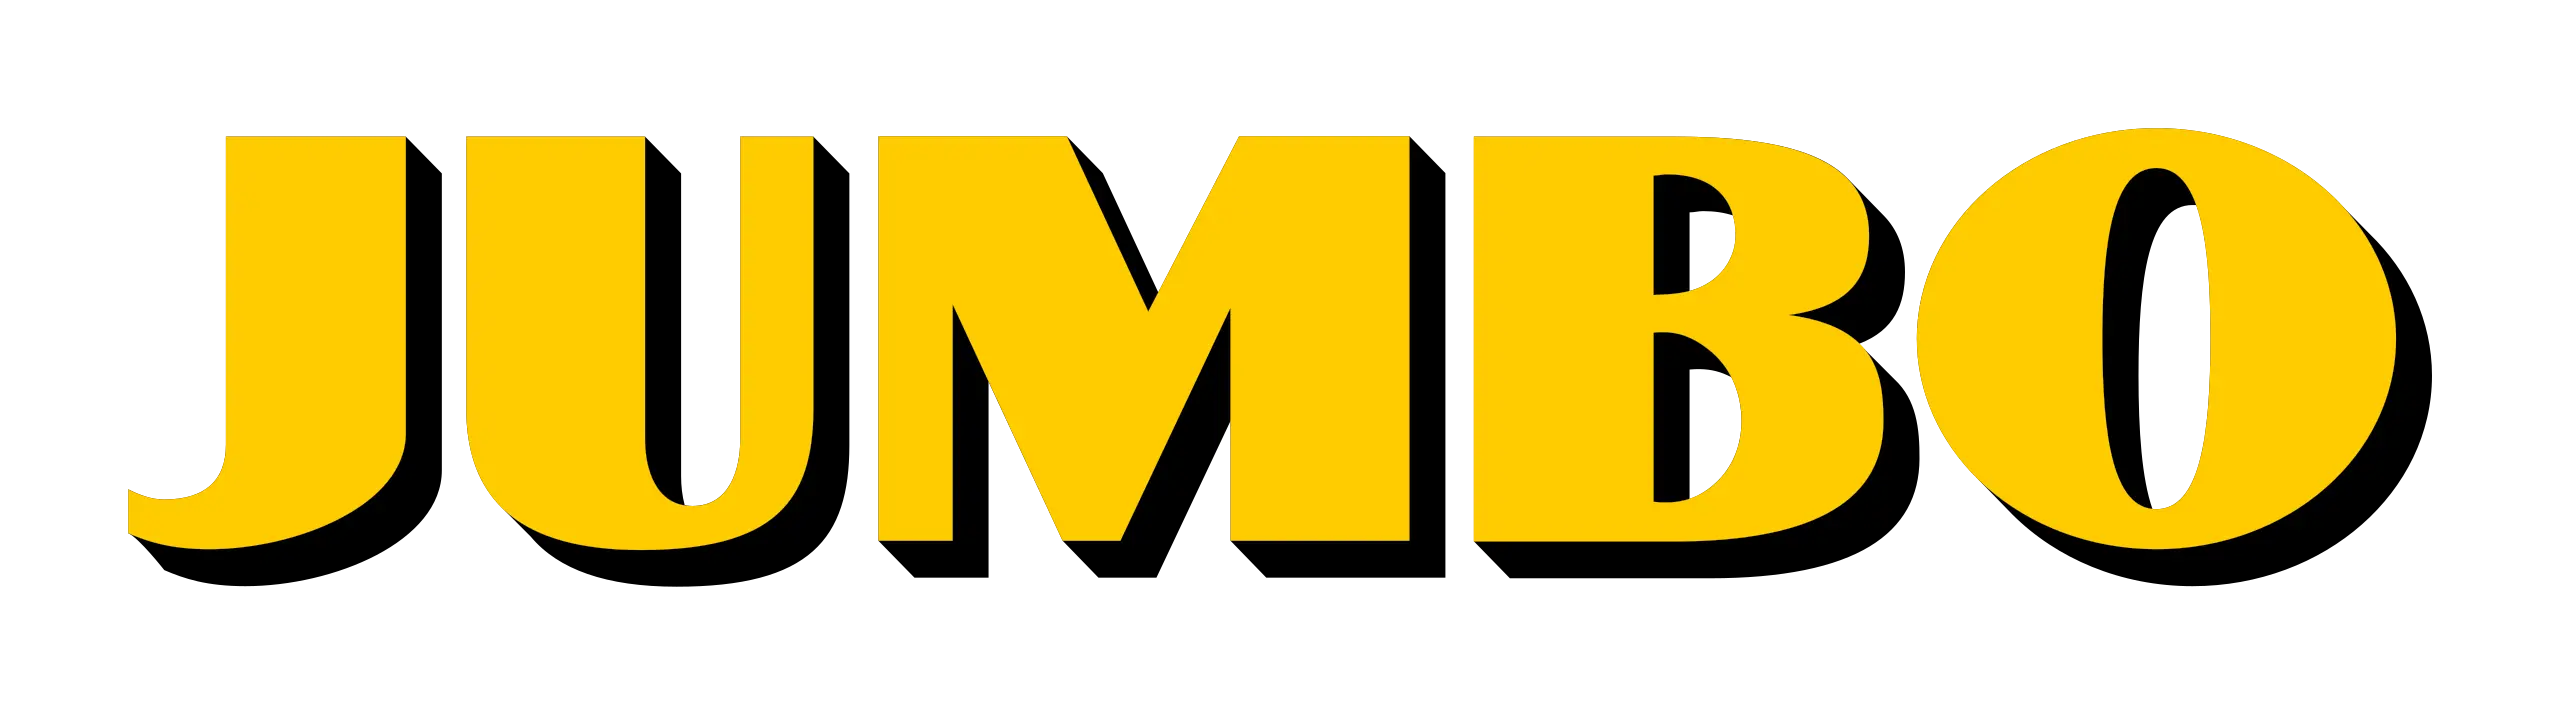 jumbo-logo